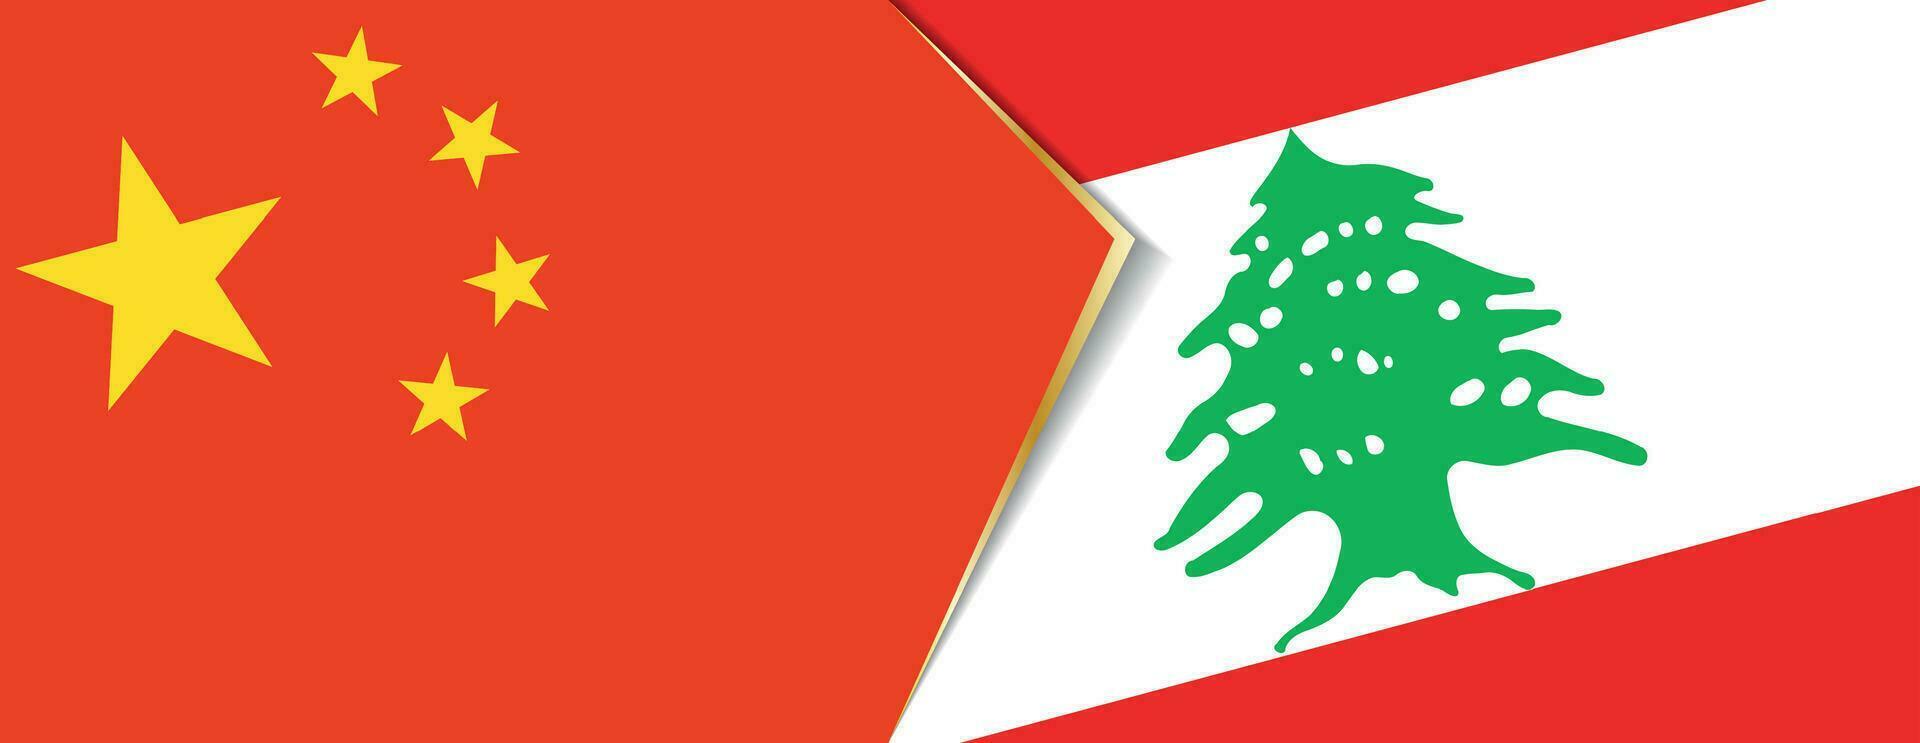 China und Libanon Flaggen, zwei Vektor Flaggen.